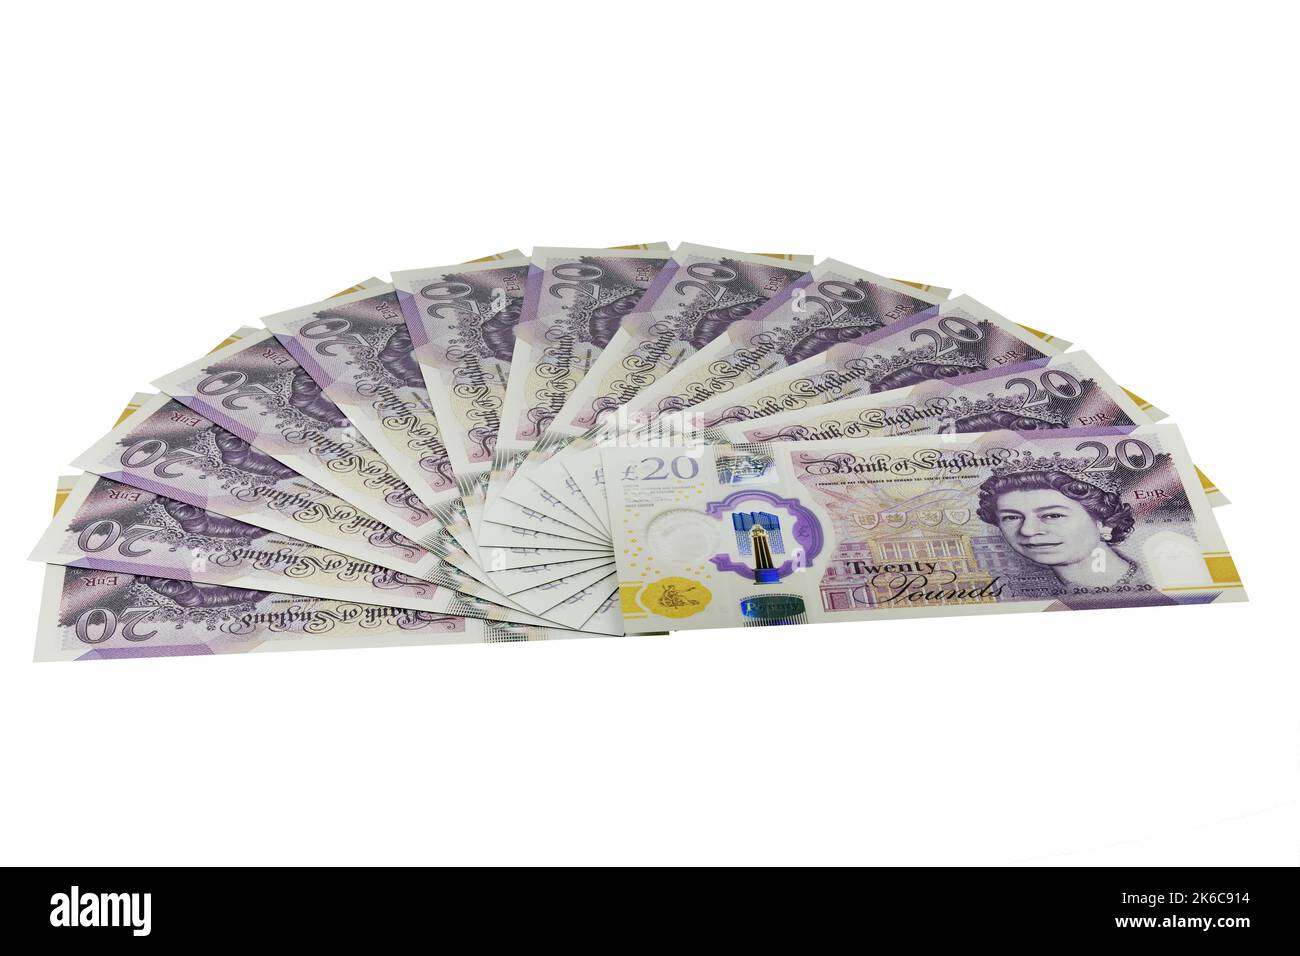 UK Money Billets fan de UK Polymer £20 billets vingt livres billets monnaie britannique Banque D'Images